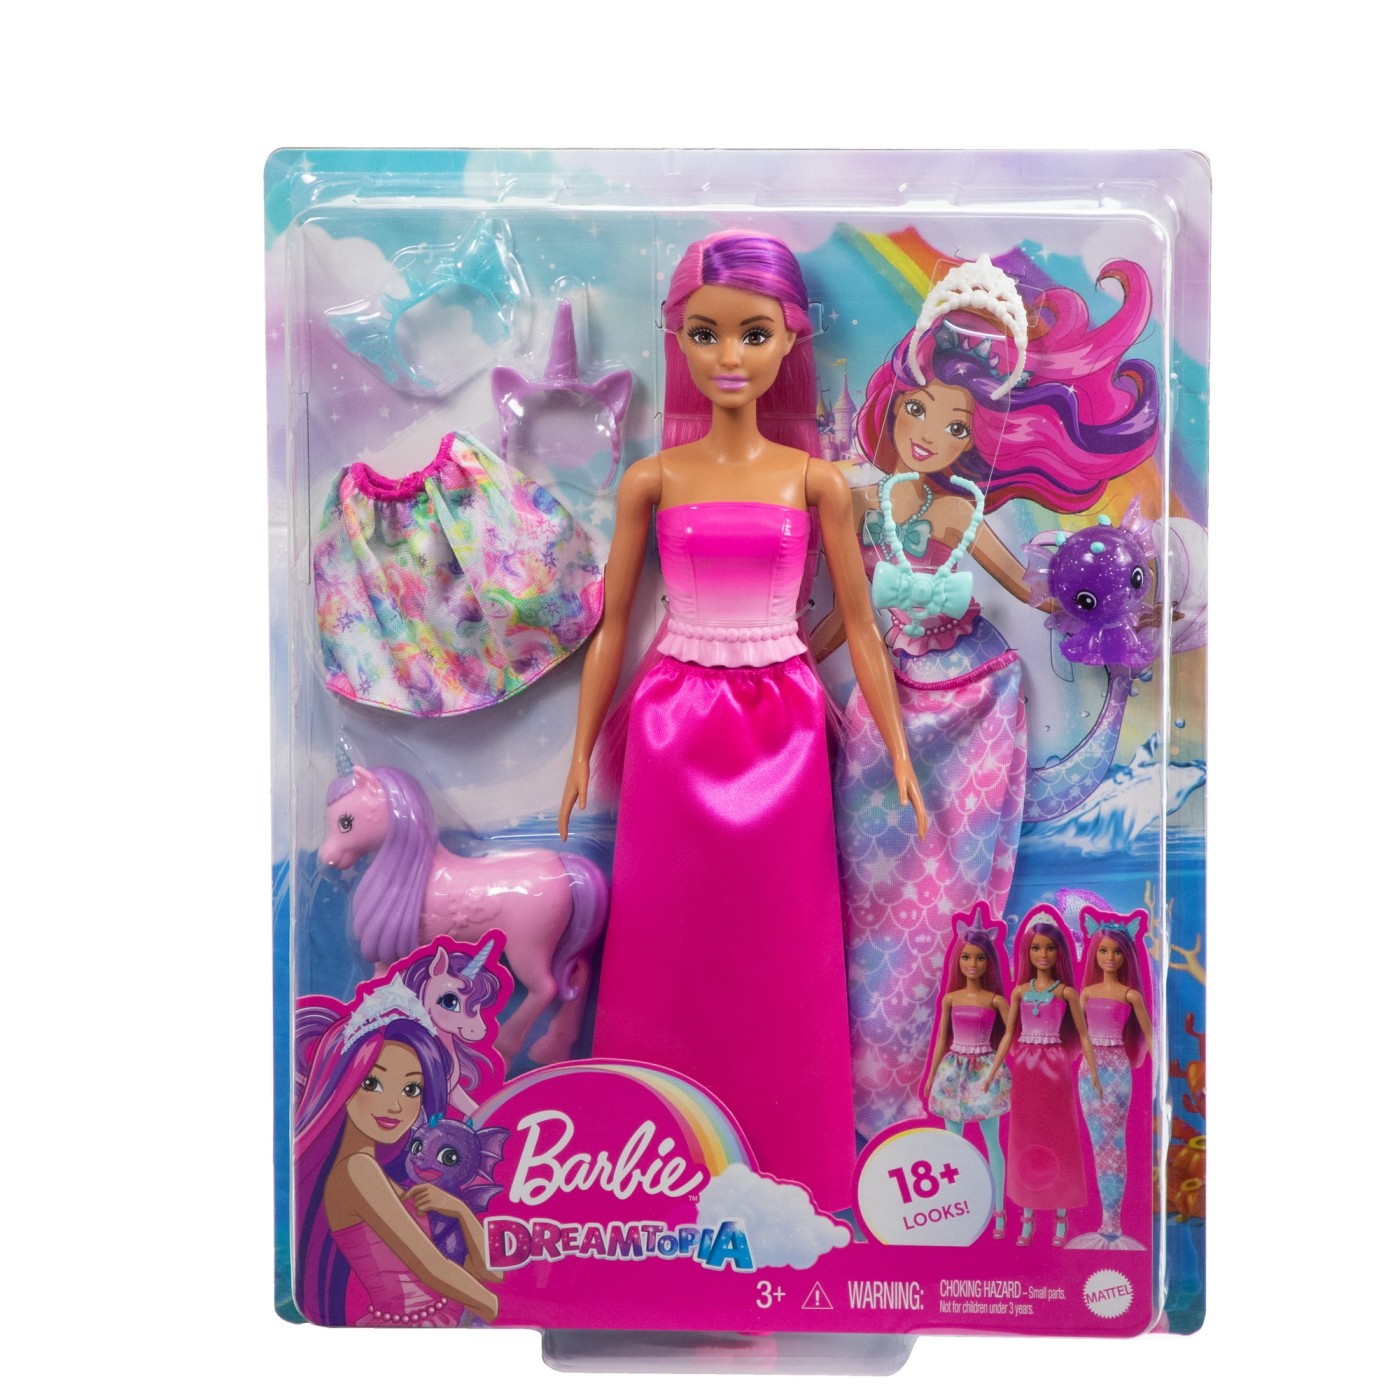 Papusa - Barbie Dreamtopia - 18+ Looks! | Mattel